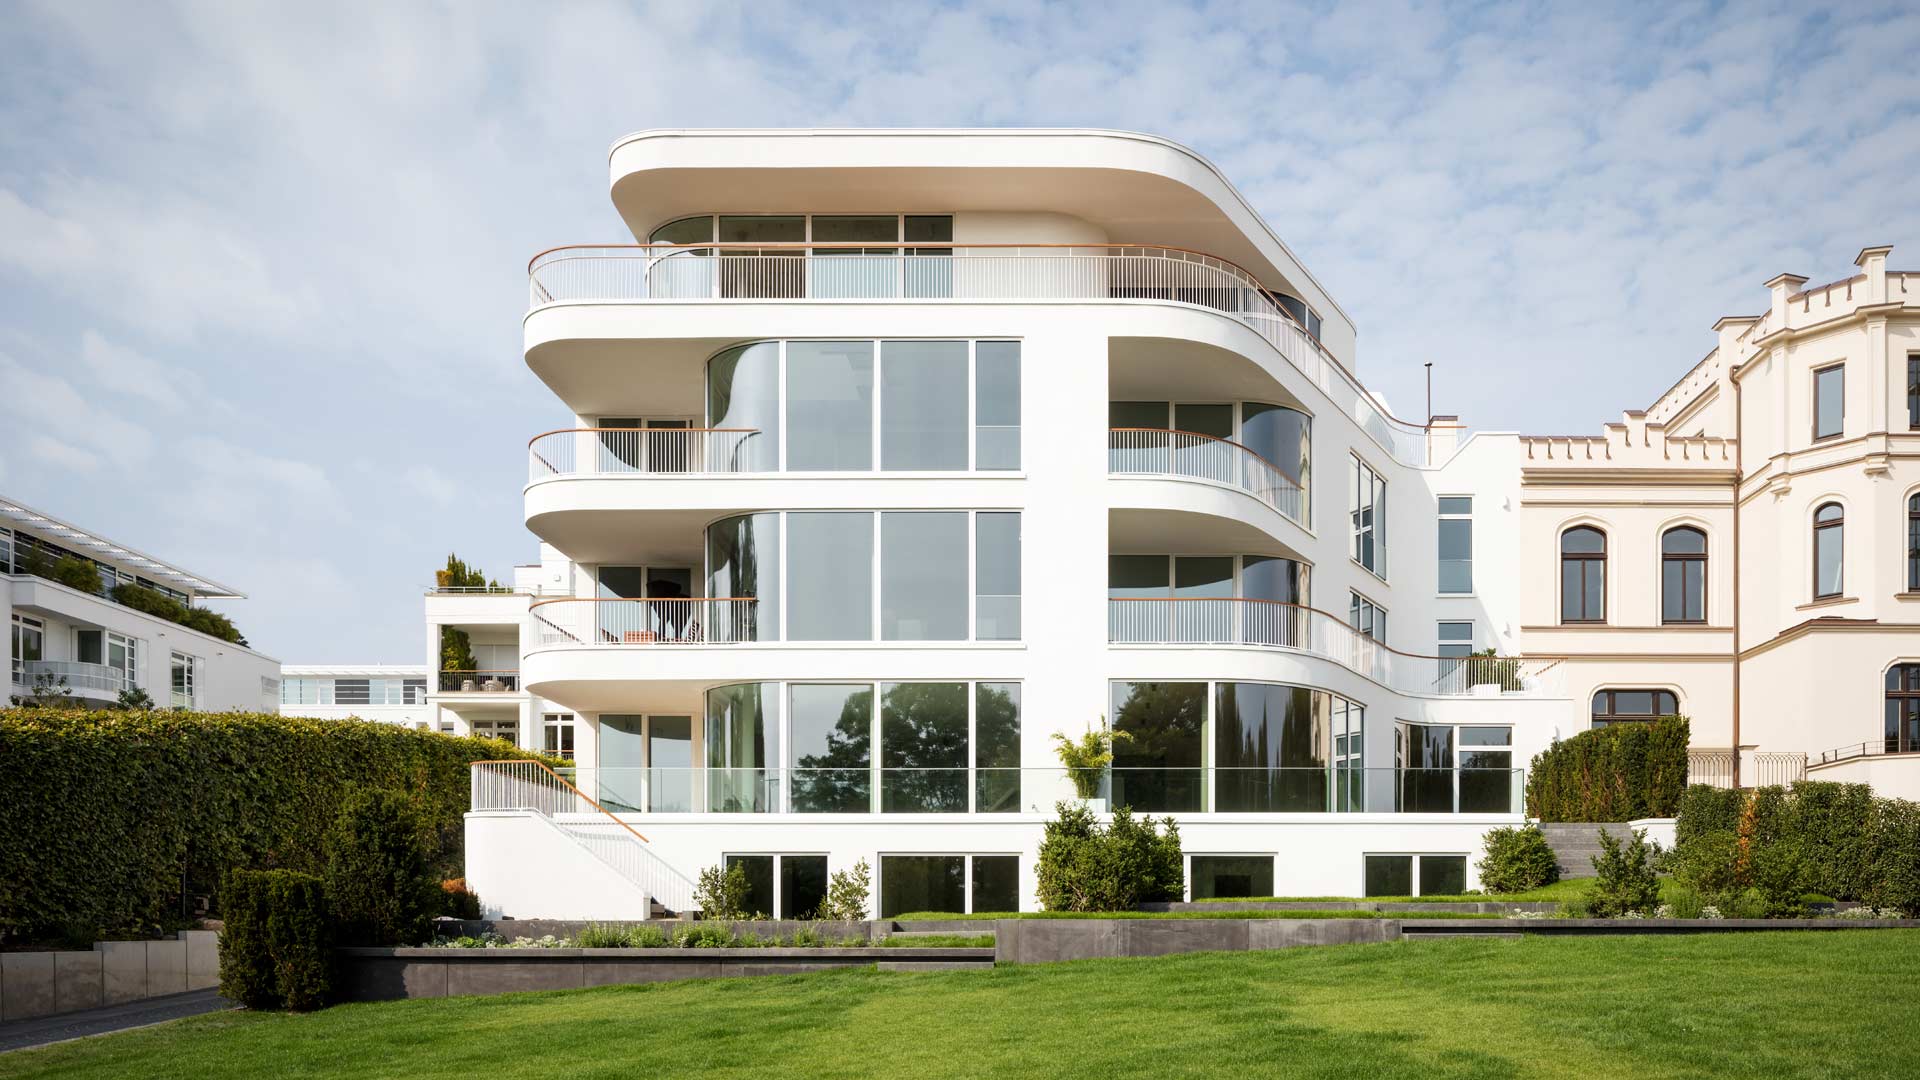 Villa mit abgerundeten Ecken von BAID Architekten in Hamburg Harvestehude